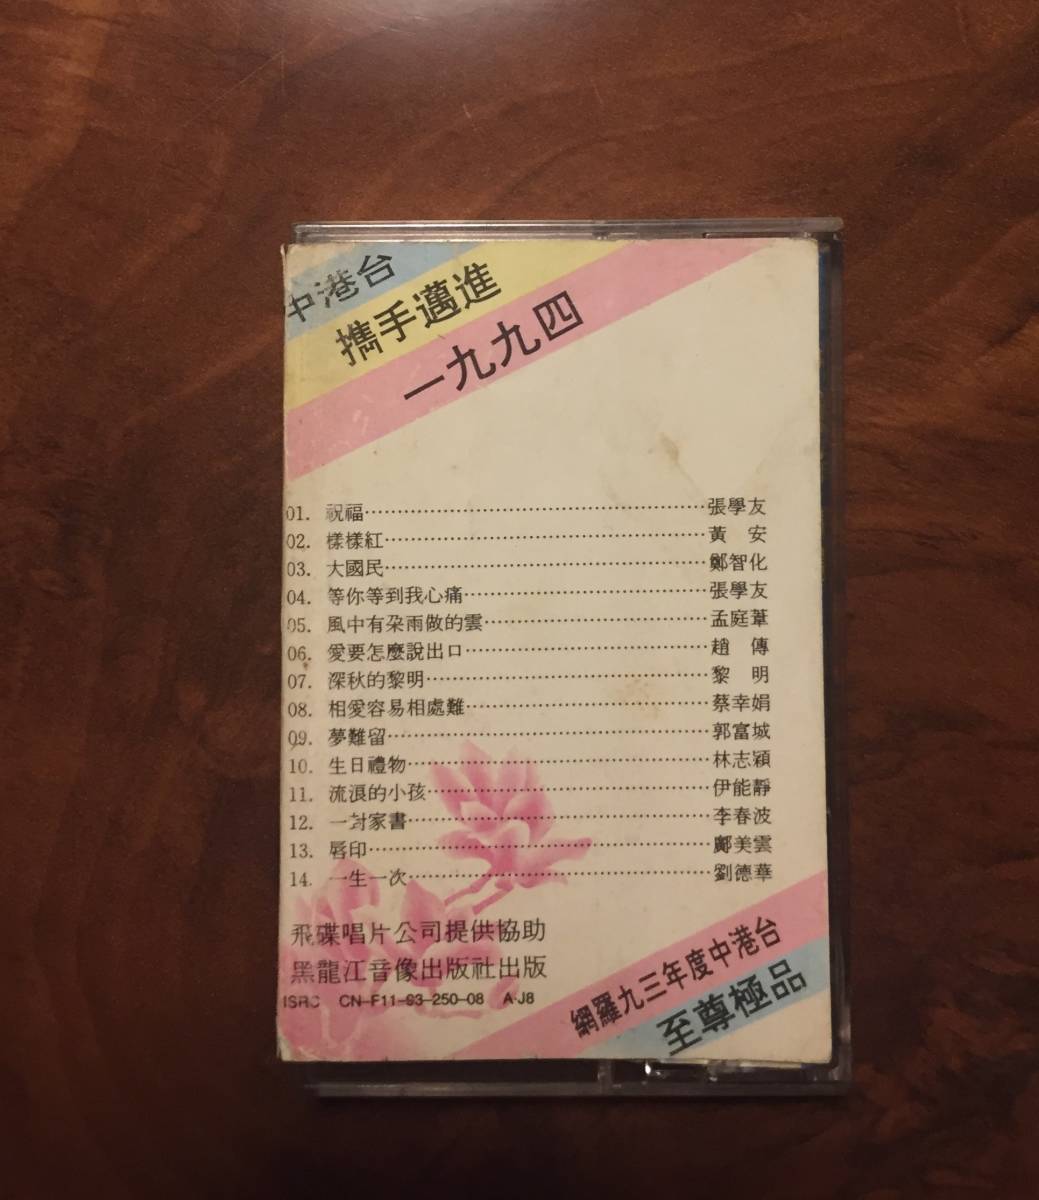 カセットテープ/ 1993年「中港台 携手邁向一九九四」台湾UFO唱片提携・CN-F11-93-250-08 A・J8 ・送料230円の画像3